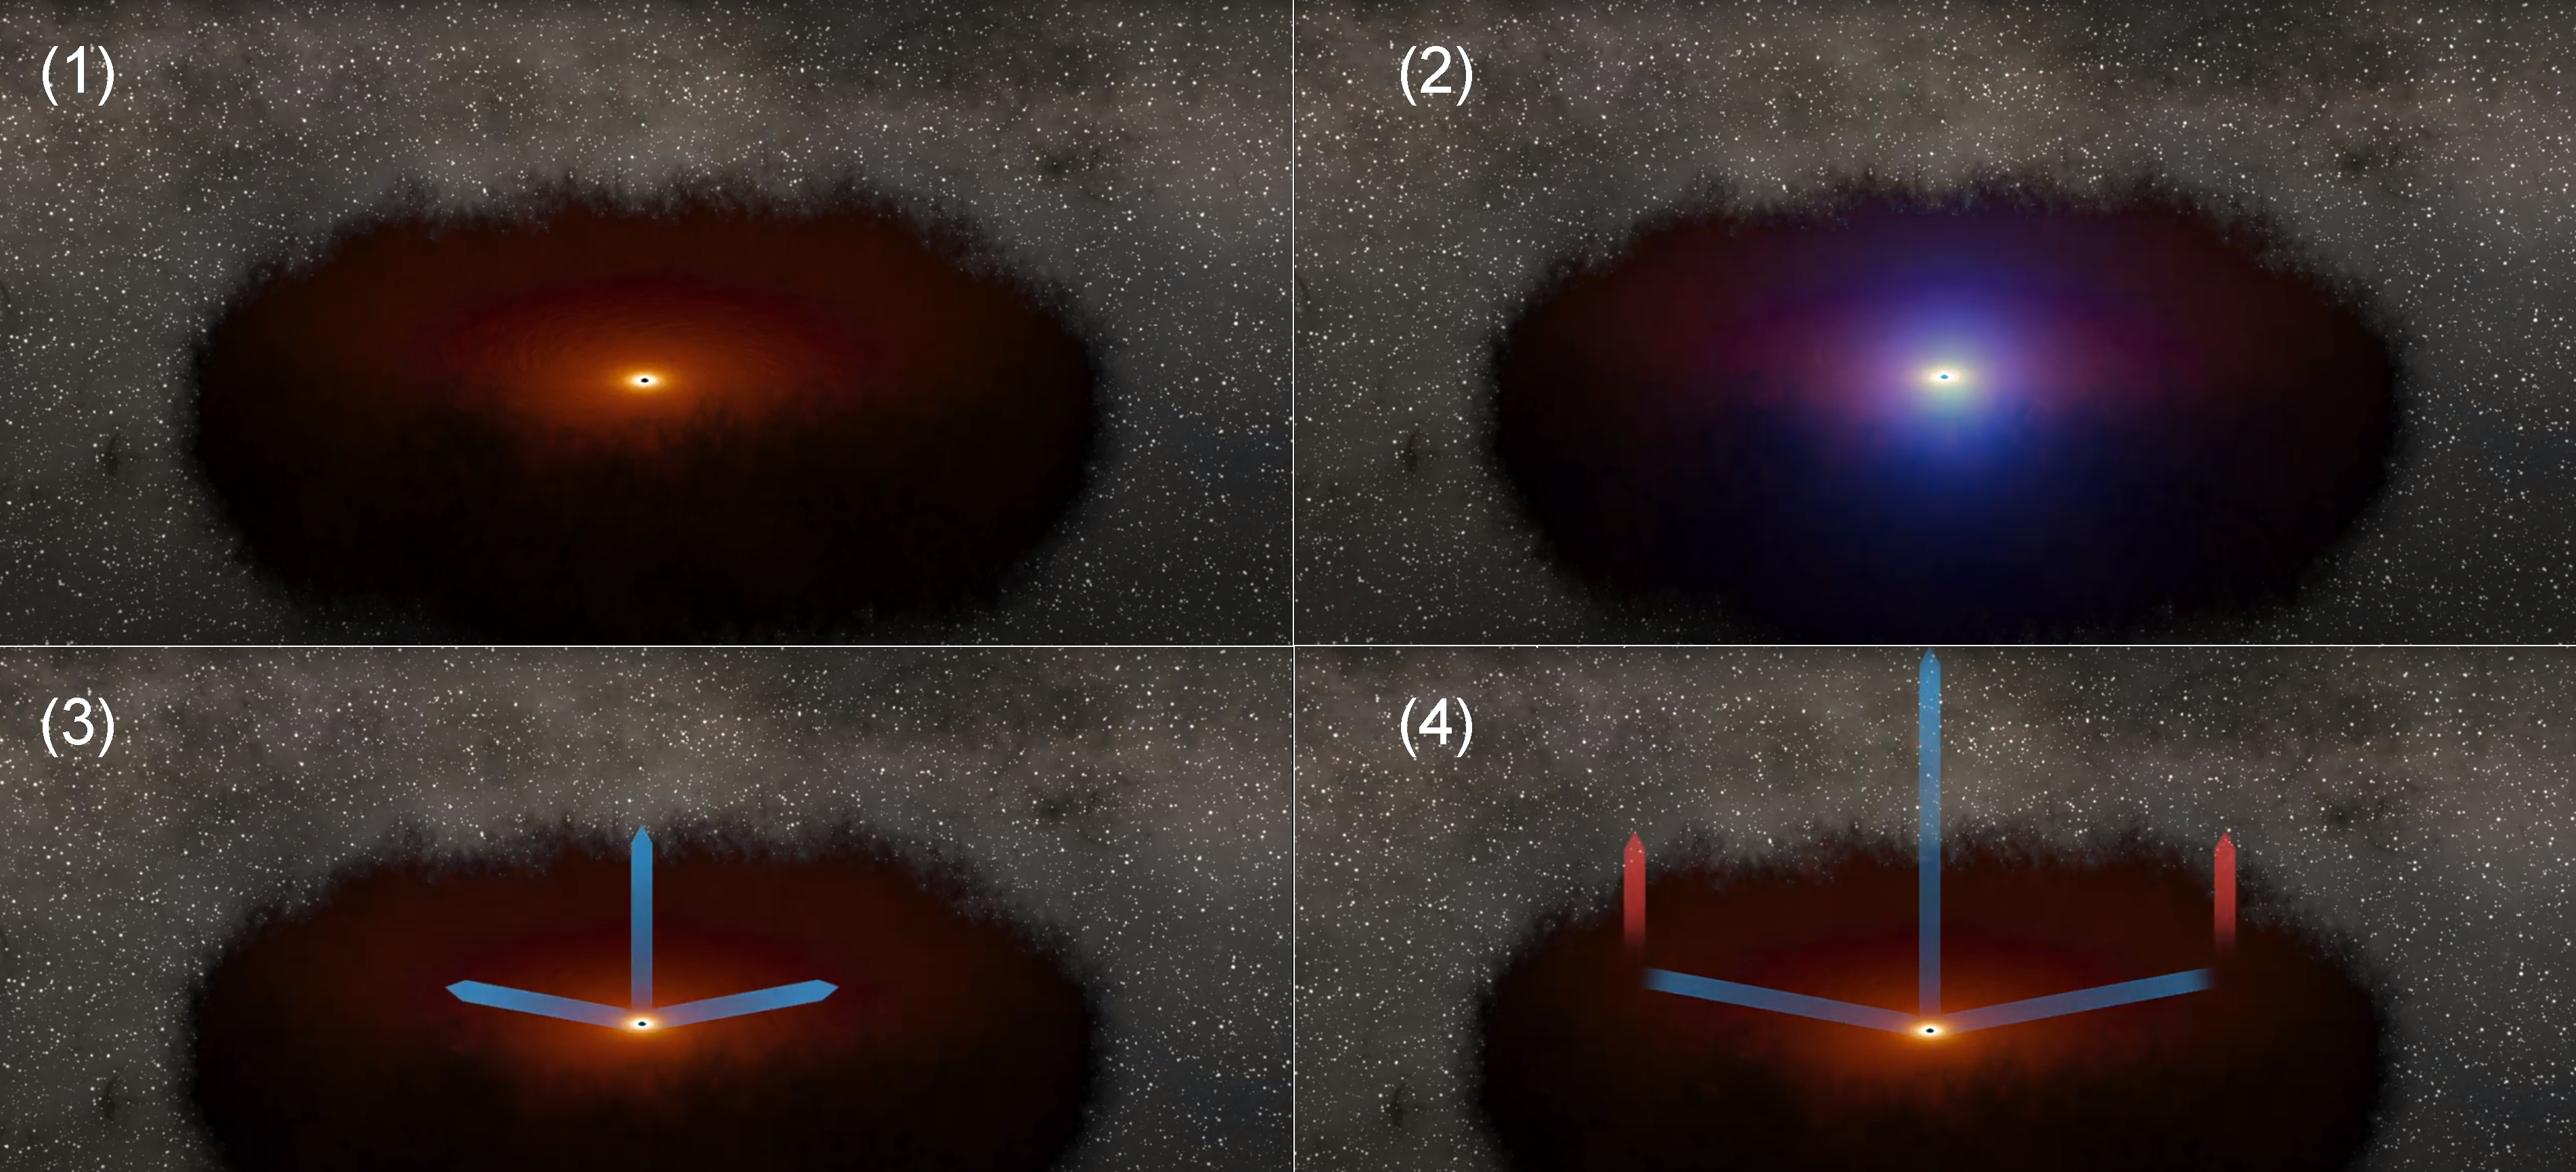 Supermasywna czarna dziura otoczona przez dysk akrecyjny i torus pyłowy - mechanizm powstawania echa w podczerwieni na brzegu dysku pyłowego po wcześniejszym rozbłysku w zakresie optycznym w dysku akrecyjnym. Źródło: NASA/JPL-Caltech.